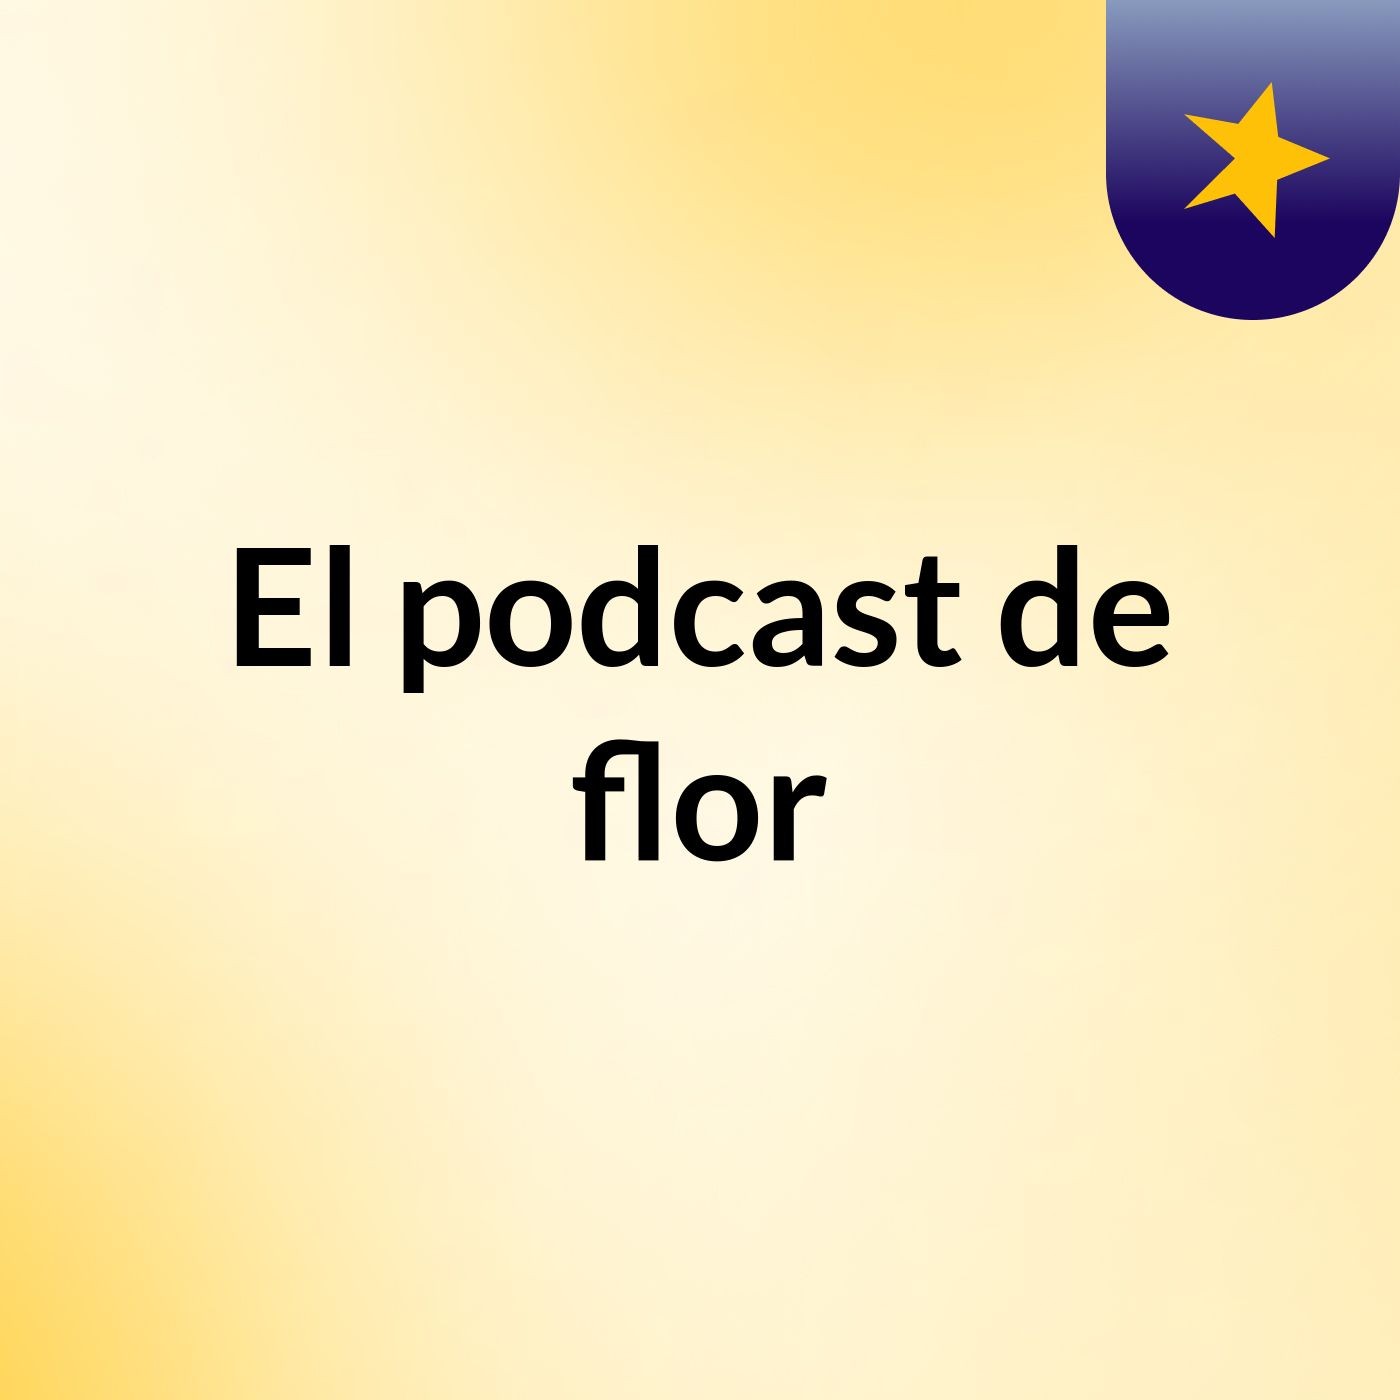 El podcast de flor